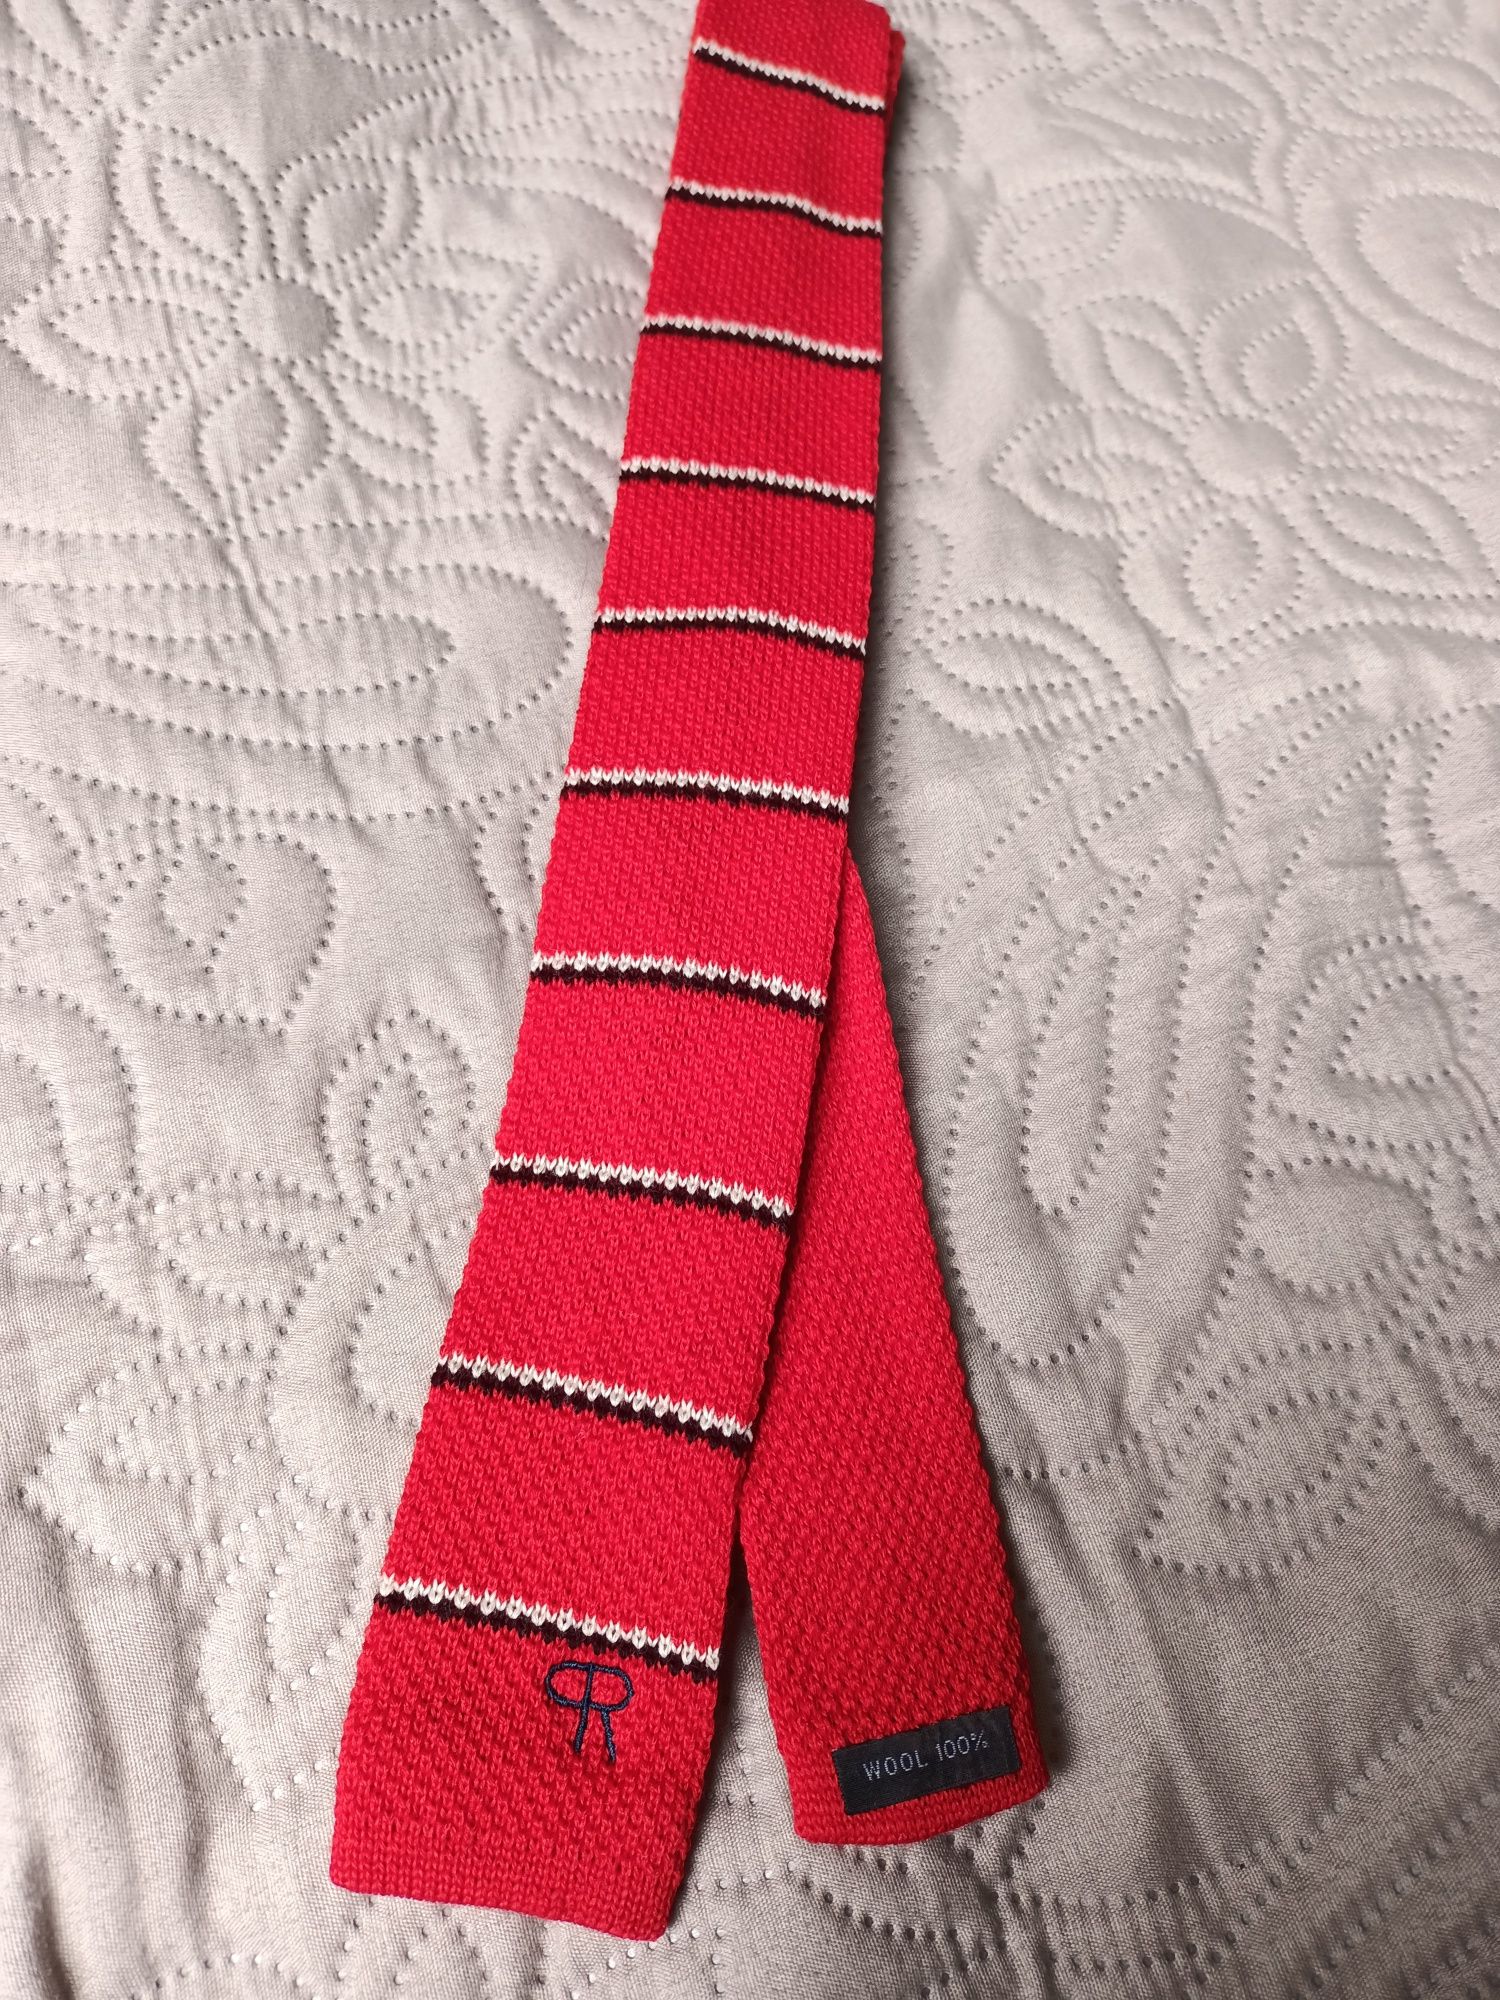 Krawat - knit 100 % wełna